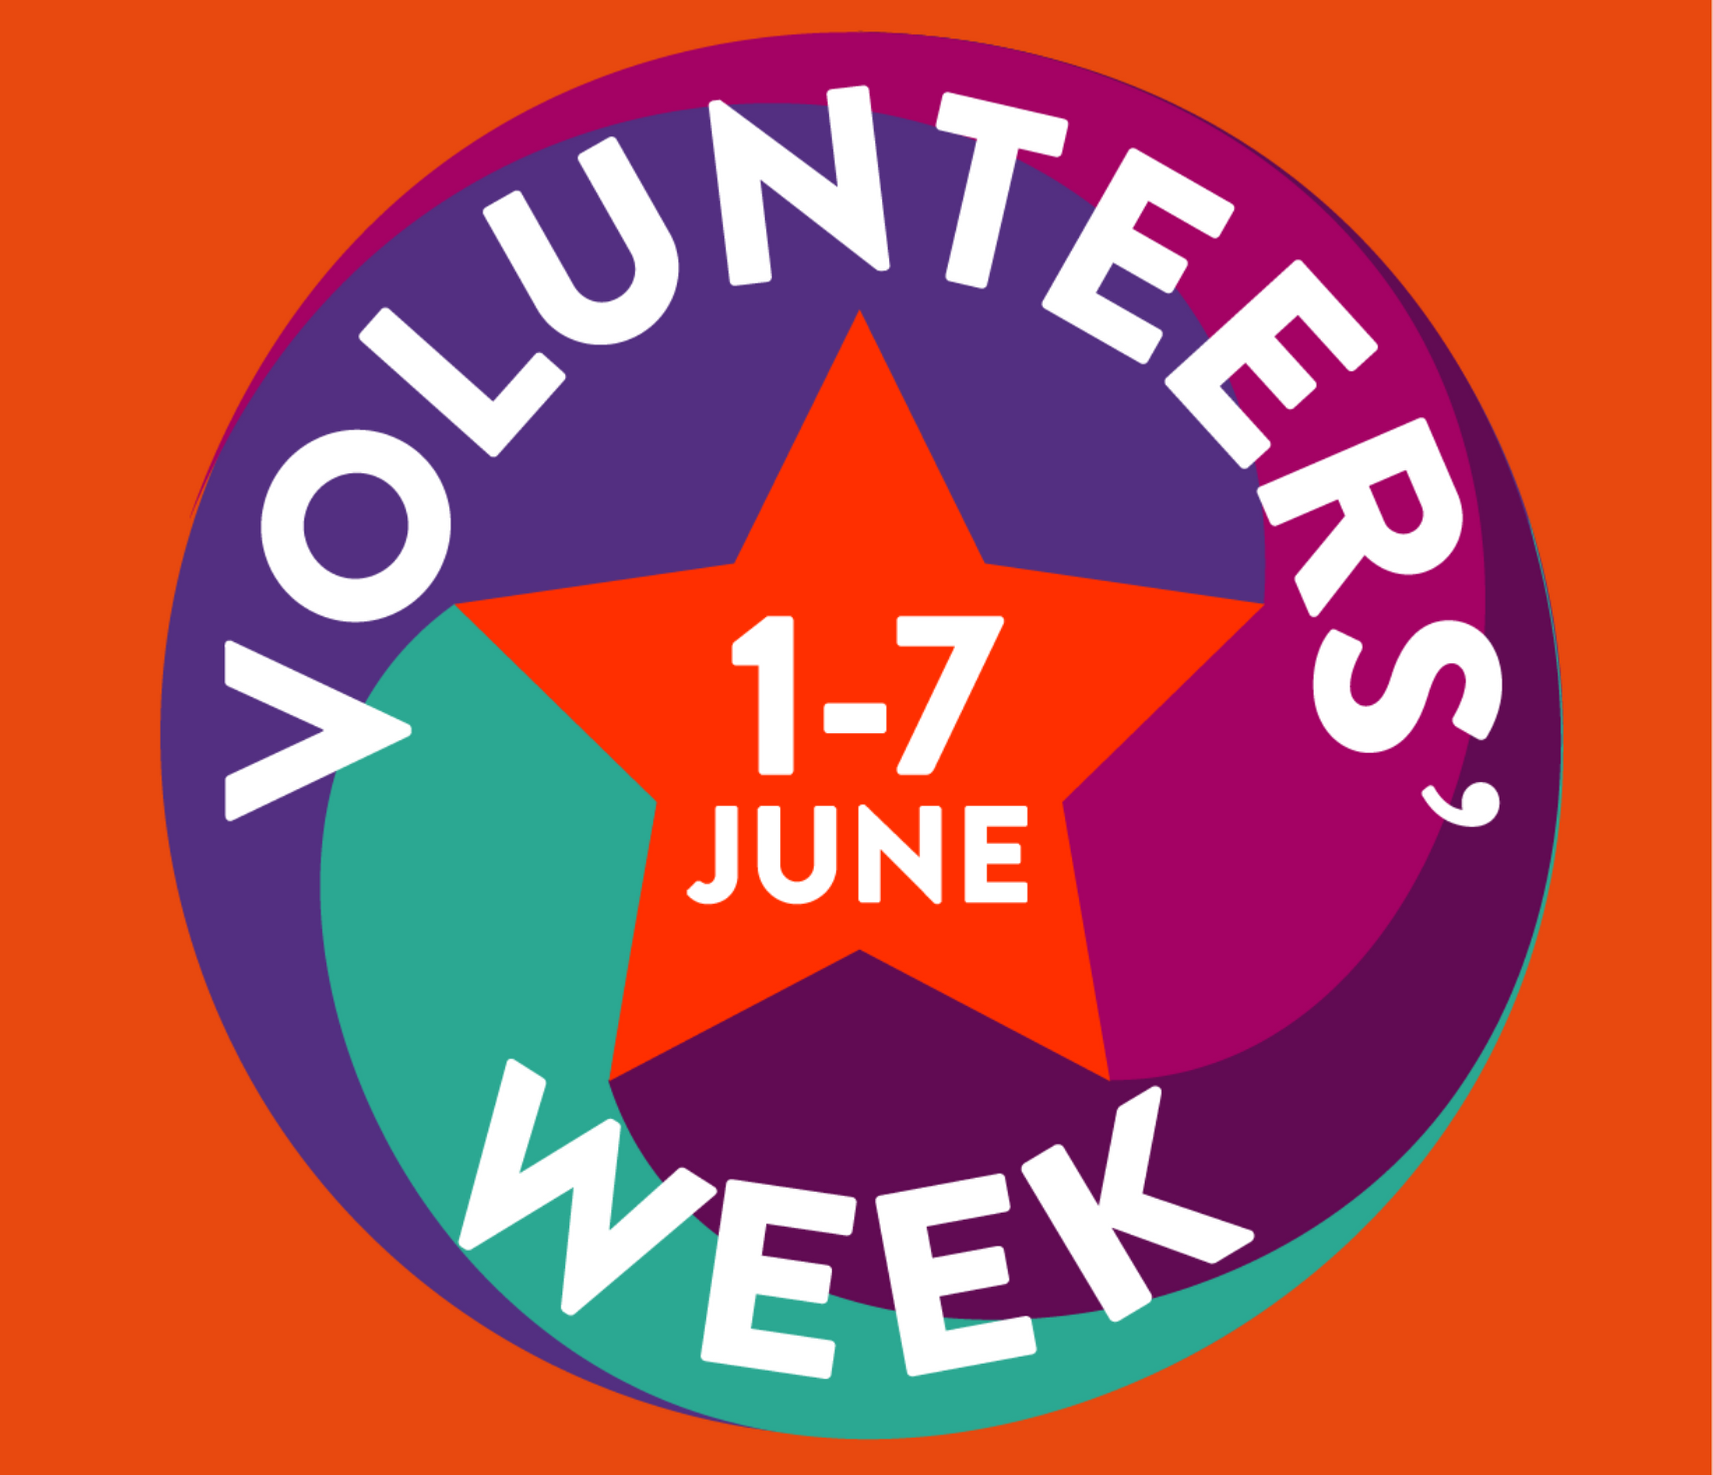 Volunteers' Week 2021 Launched! Volunteer Now